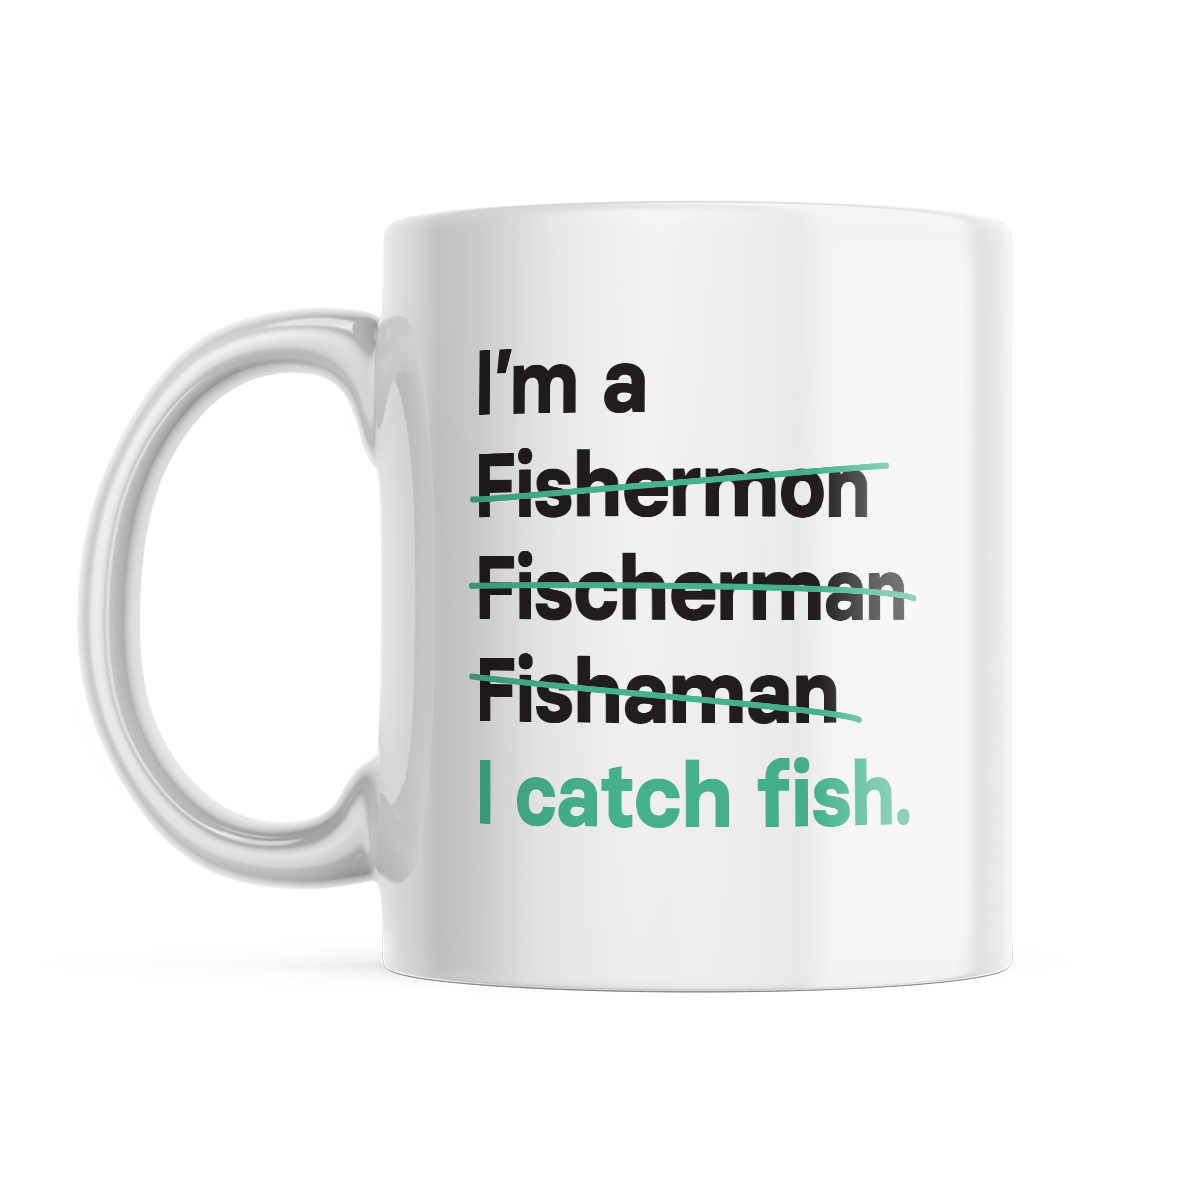 I'm a Fisherman